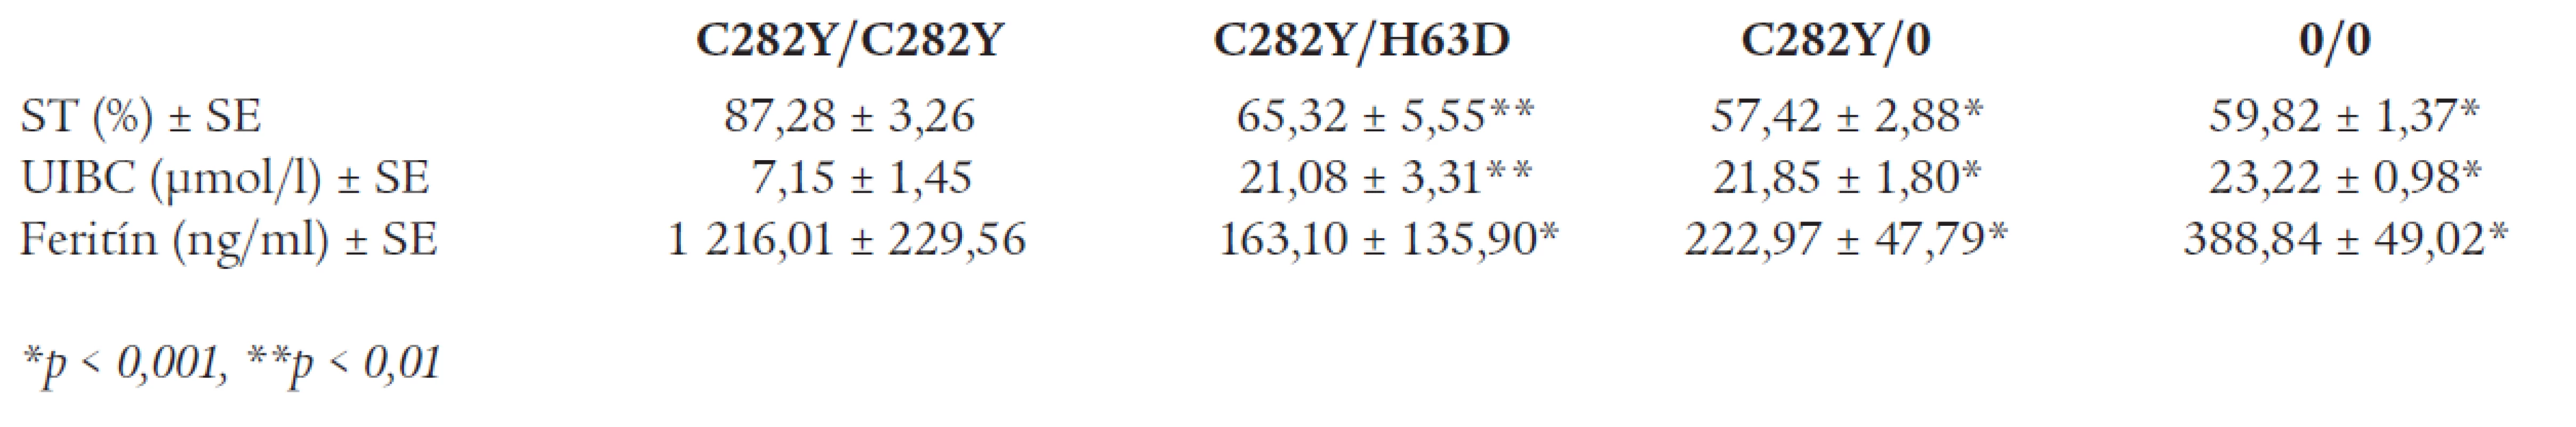 Priemerné hodnoty saturácie transferínu (ST), nesaturovanej väzobnej kapacity pre železo (UIBC) a sérového feritínu podľa genotypu génu HFE. Údaje sú uvedené ako priemer ± SE.